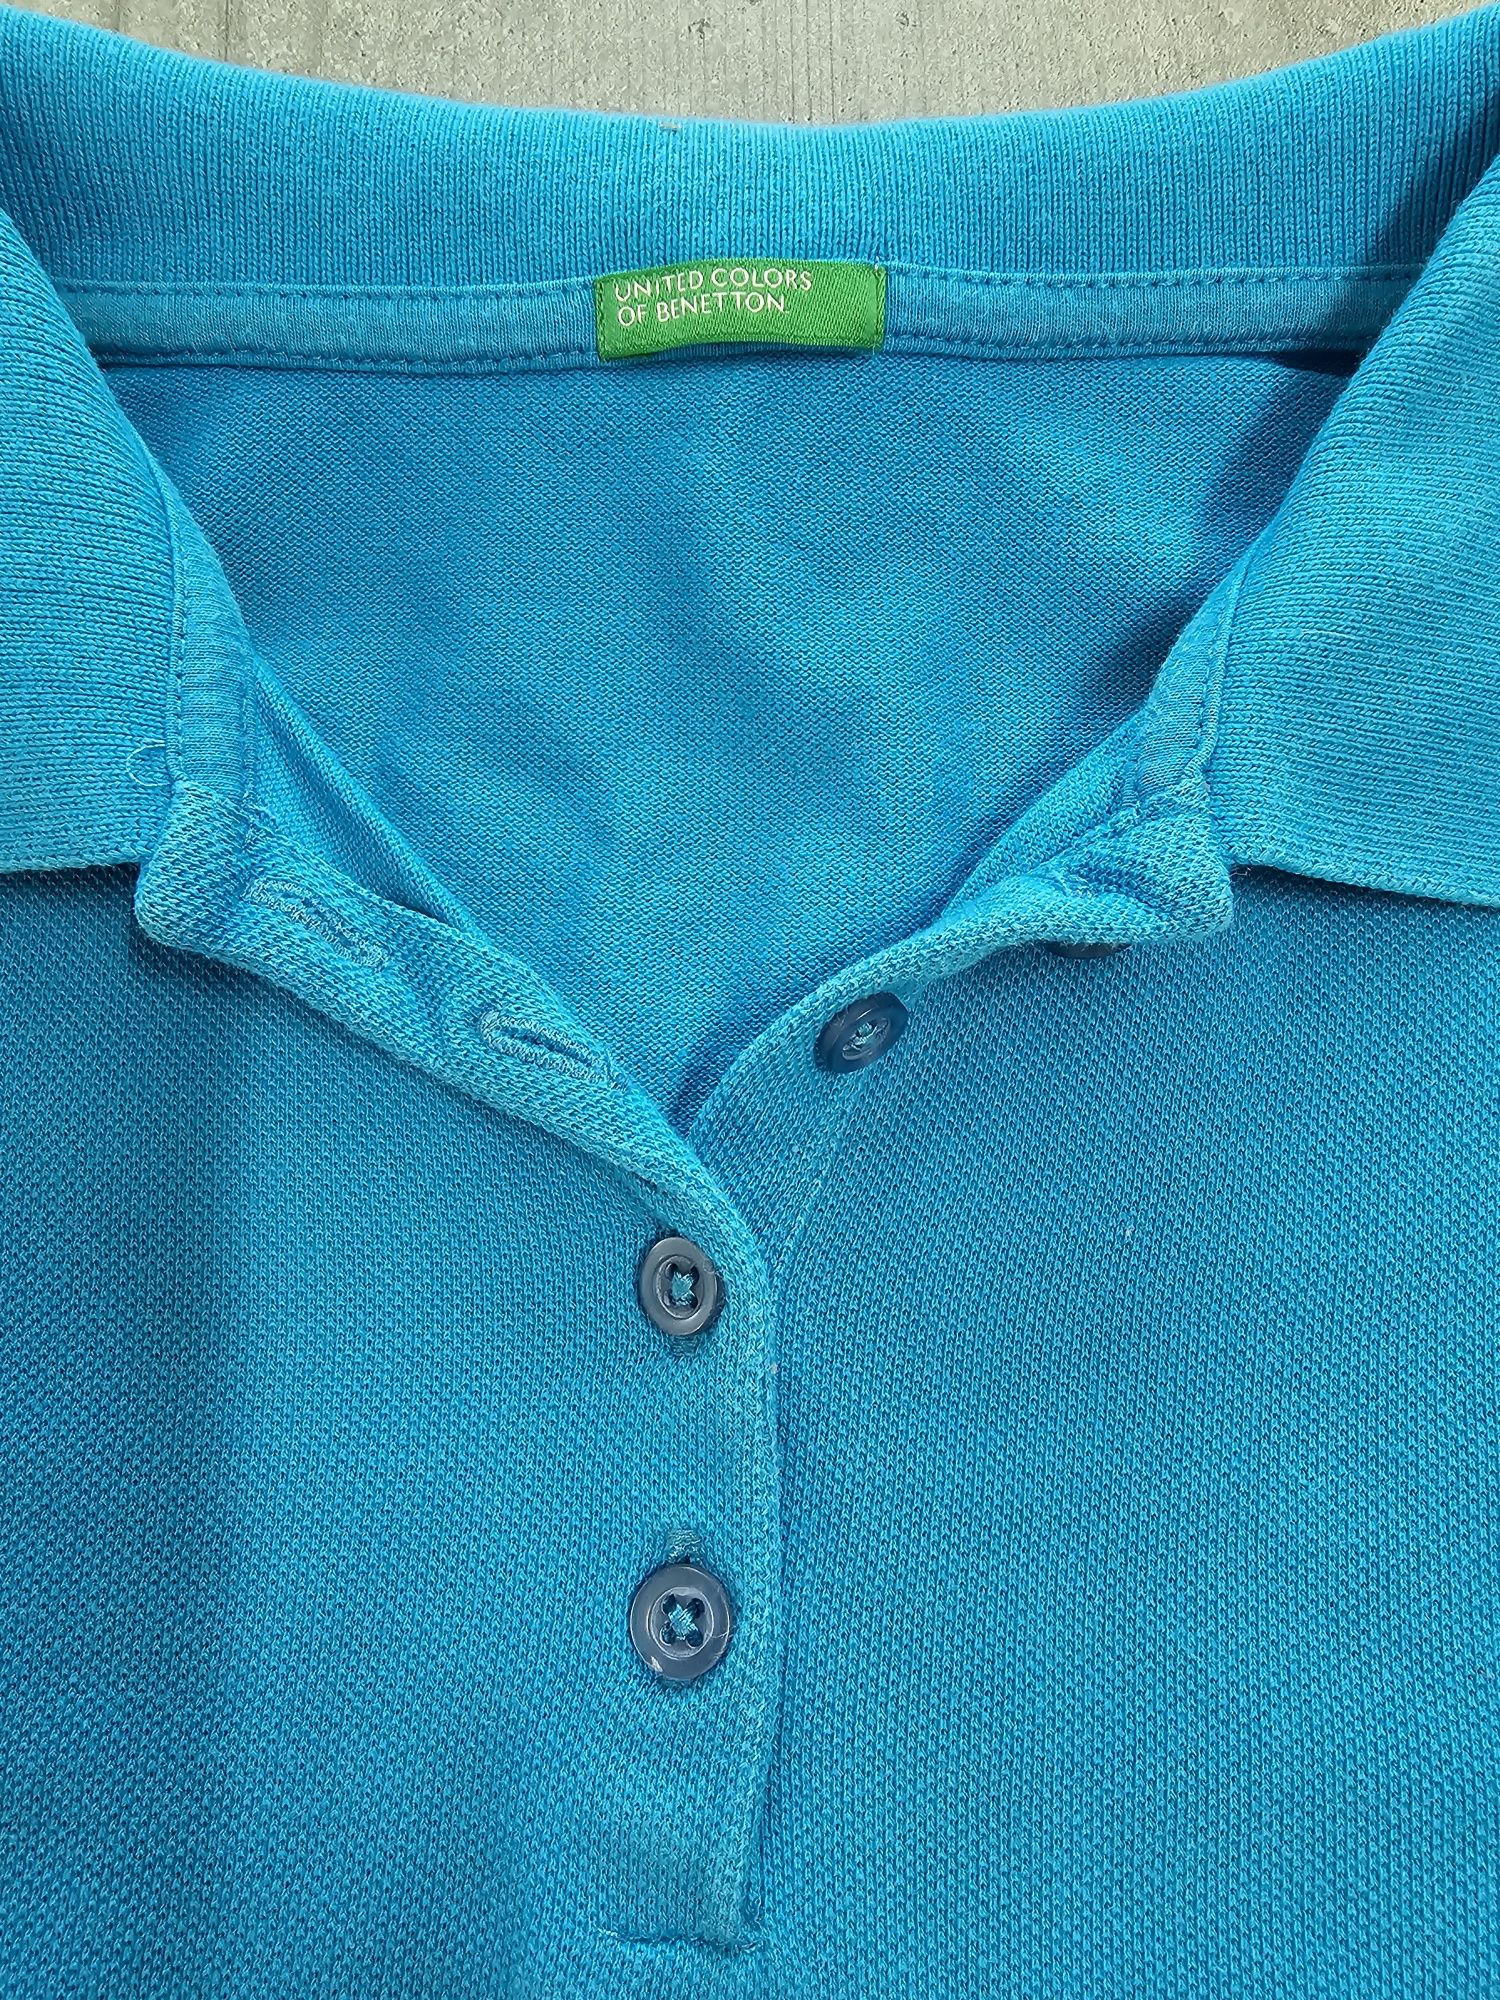 Поло, футболка United Colors of Benetton, женское М